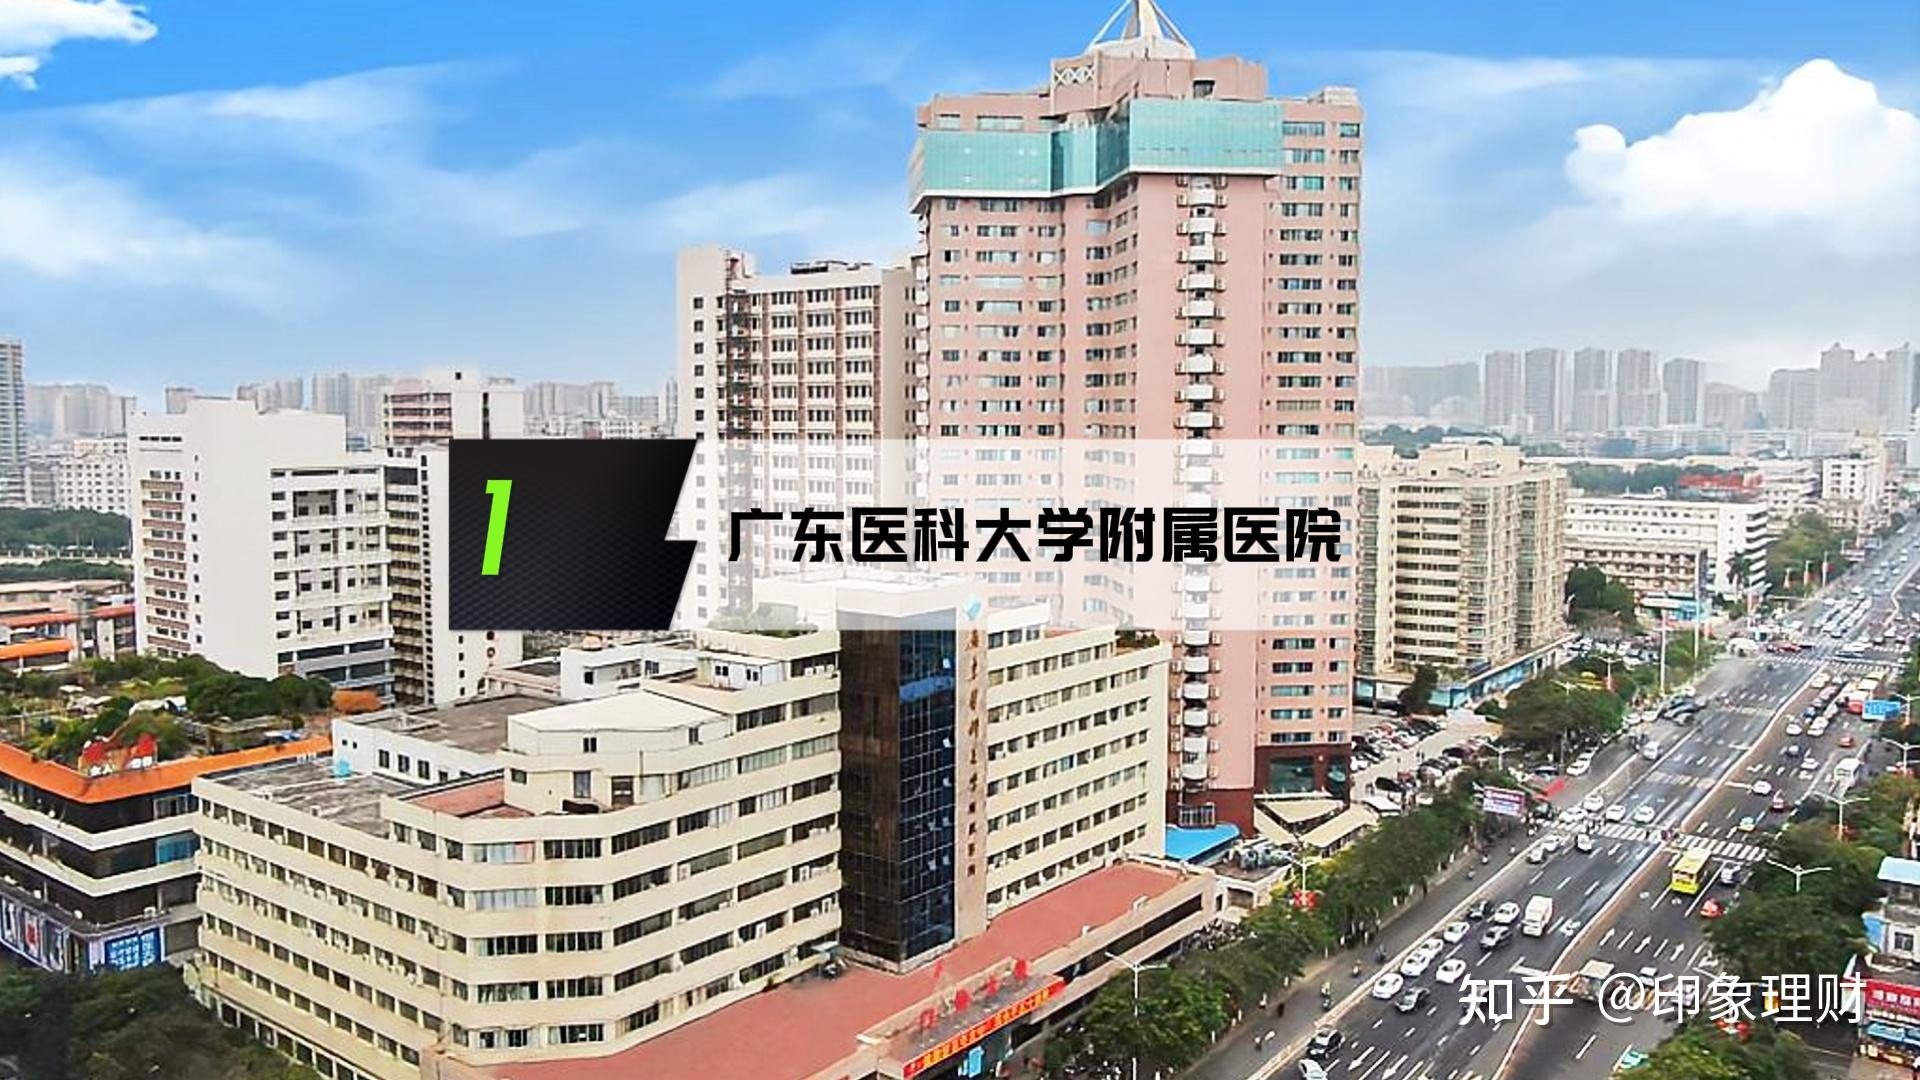 广东省湛江市霞山区人民大道南57号广东医科大学附属医院始建于1963年